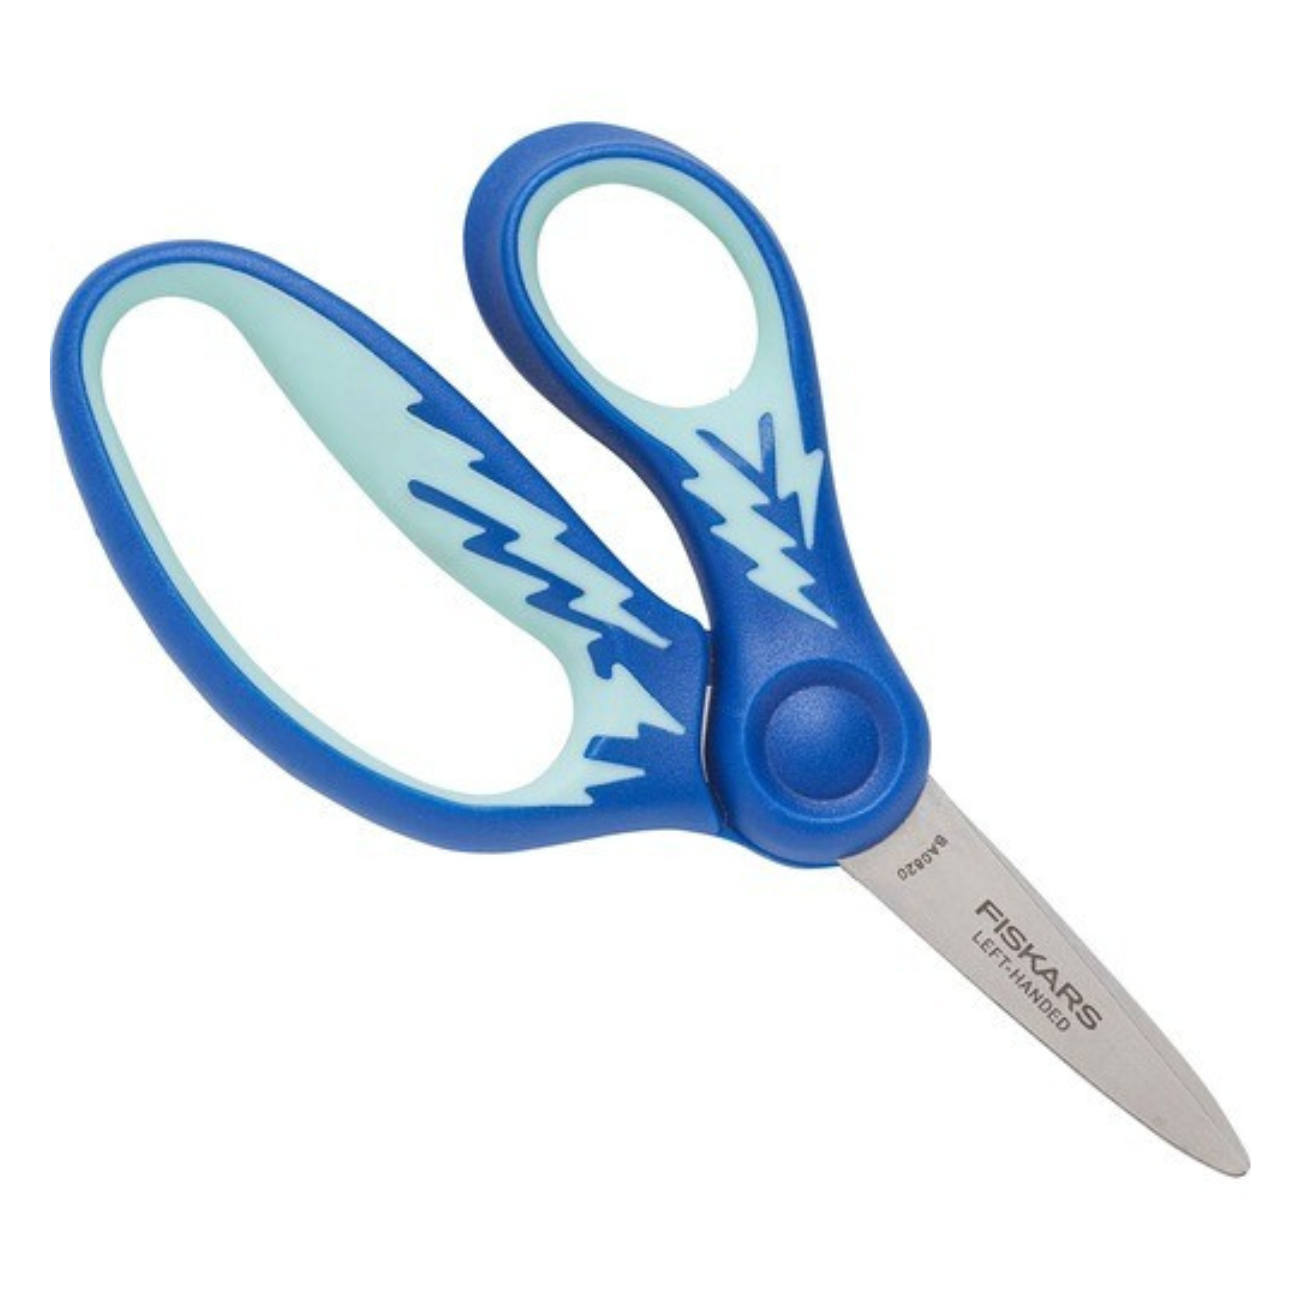  Fiskars 5 Pointed-Tip Scissors for Kids 4+ - Scissors